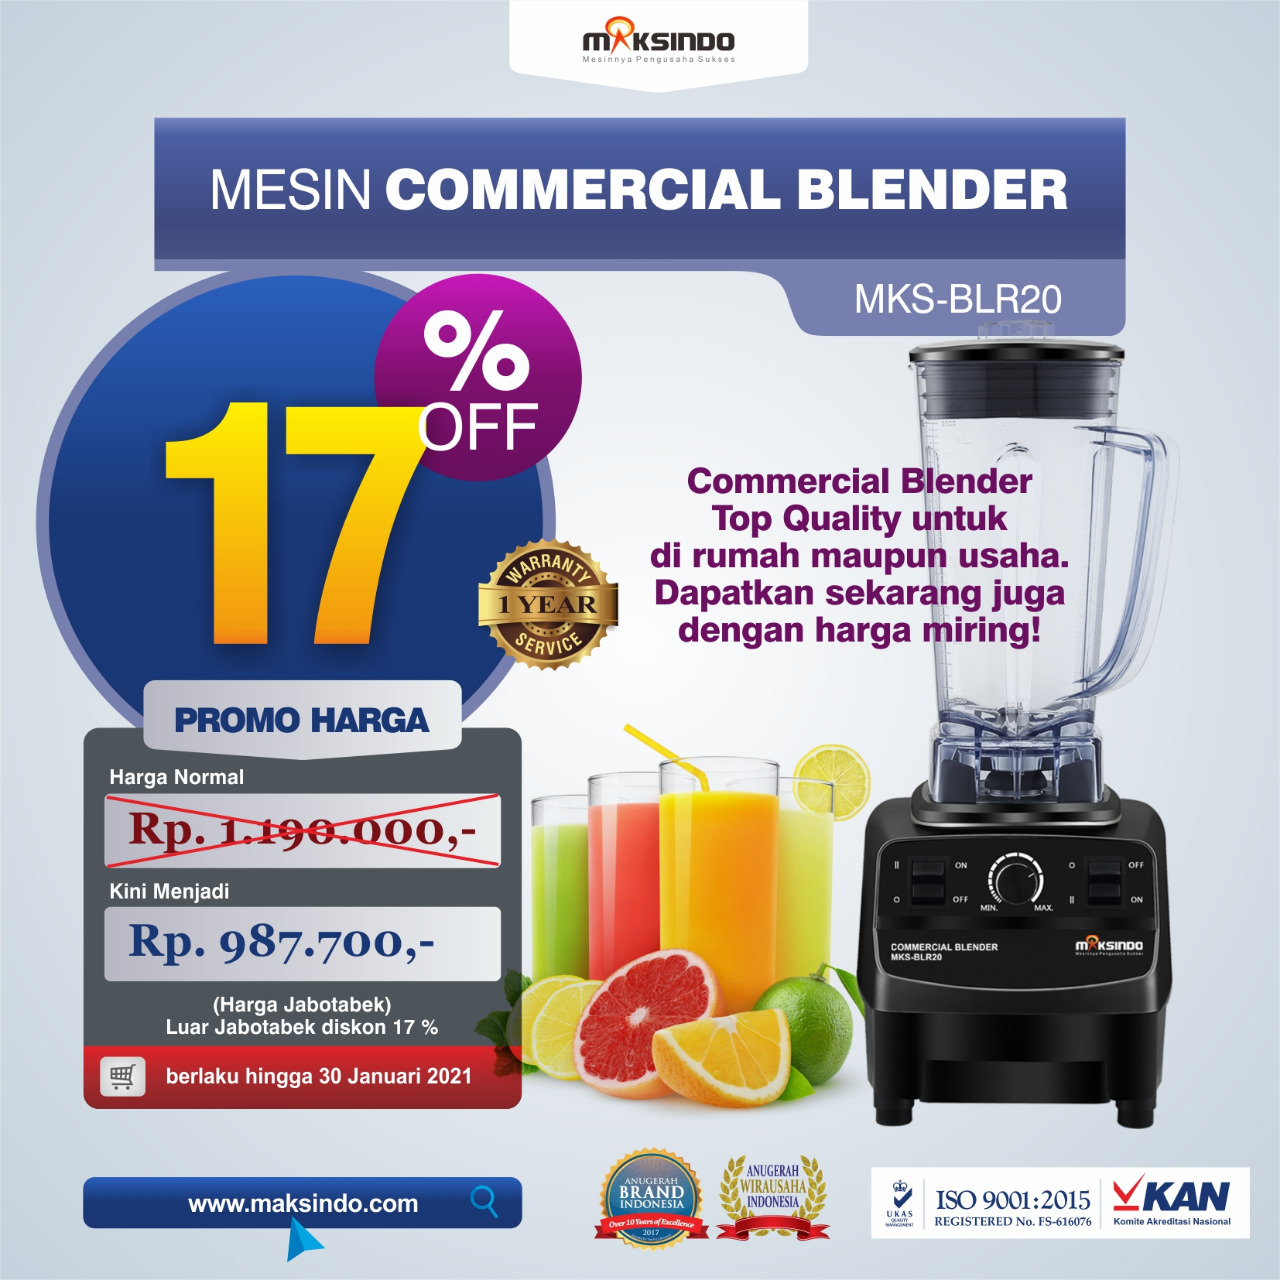 Jual Commercial Blender MKS-BLR20 di Bekasi